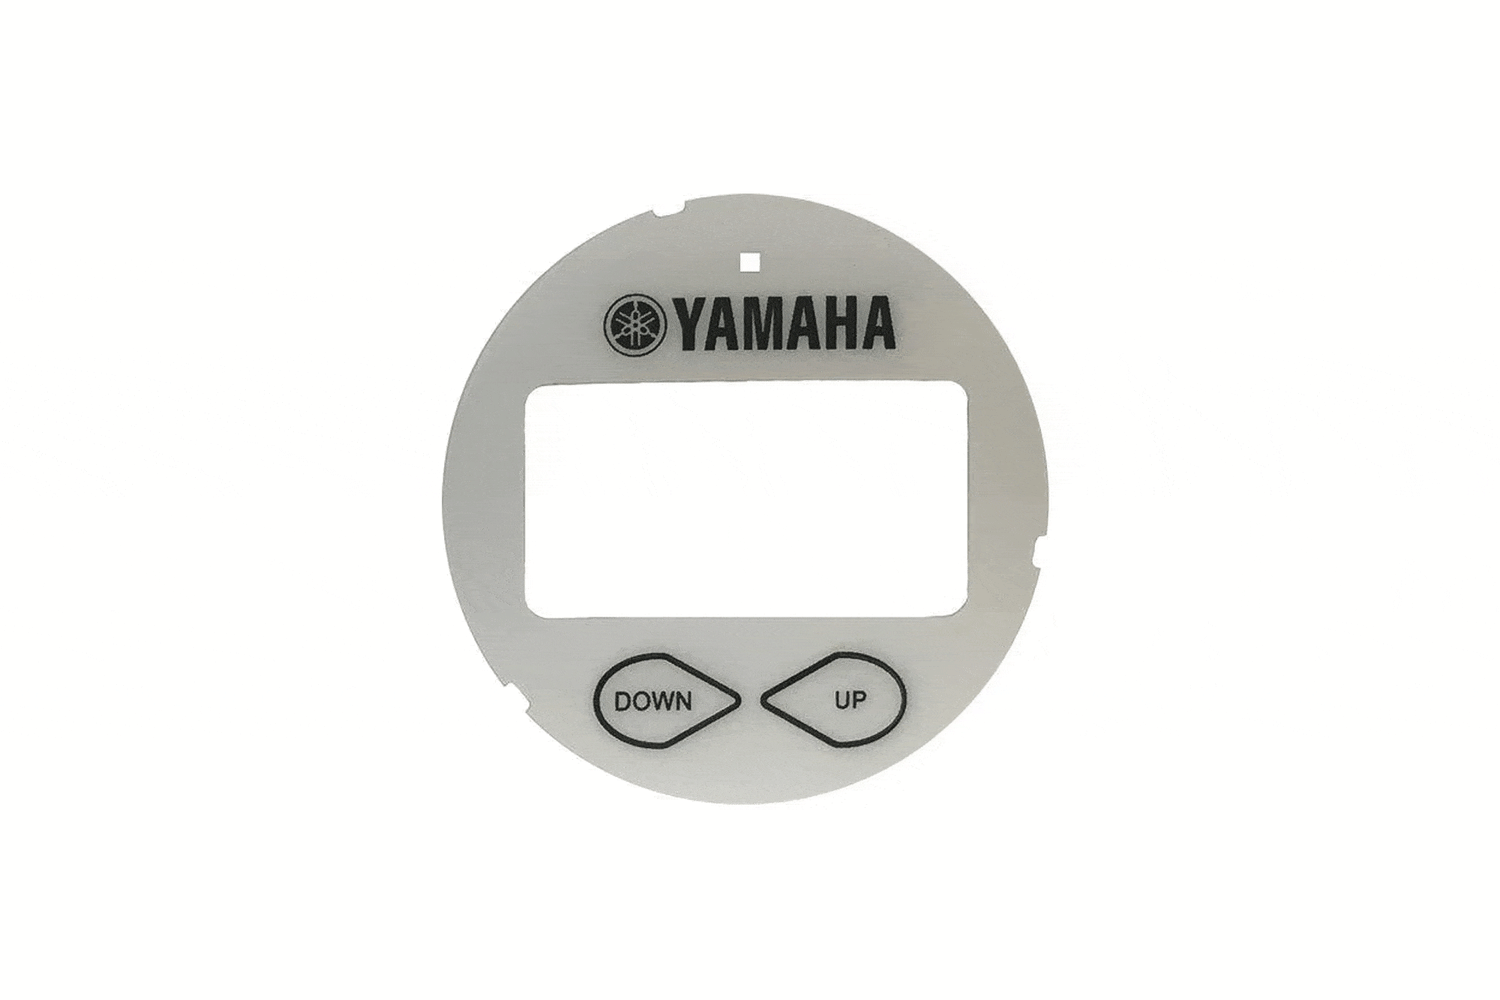 Yamaha Boat Mount Depth Finder Face Plate Kit